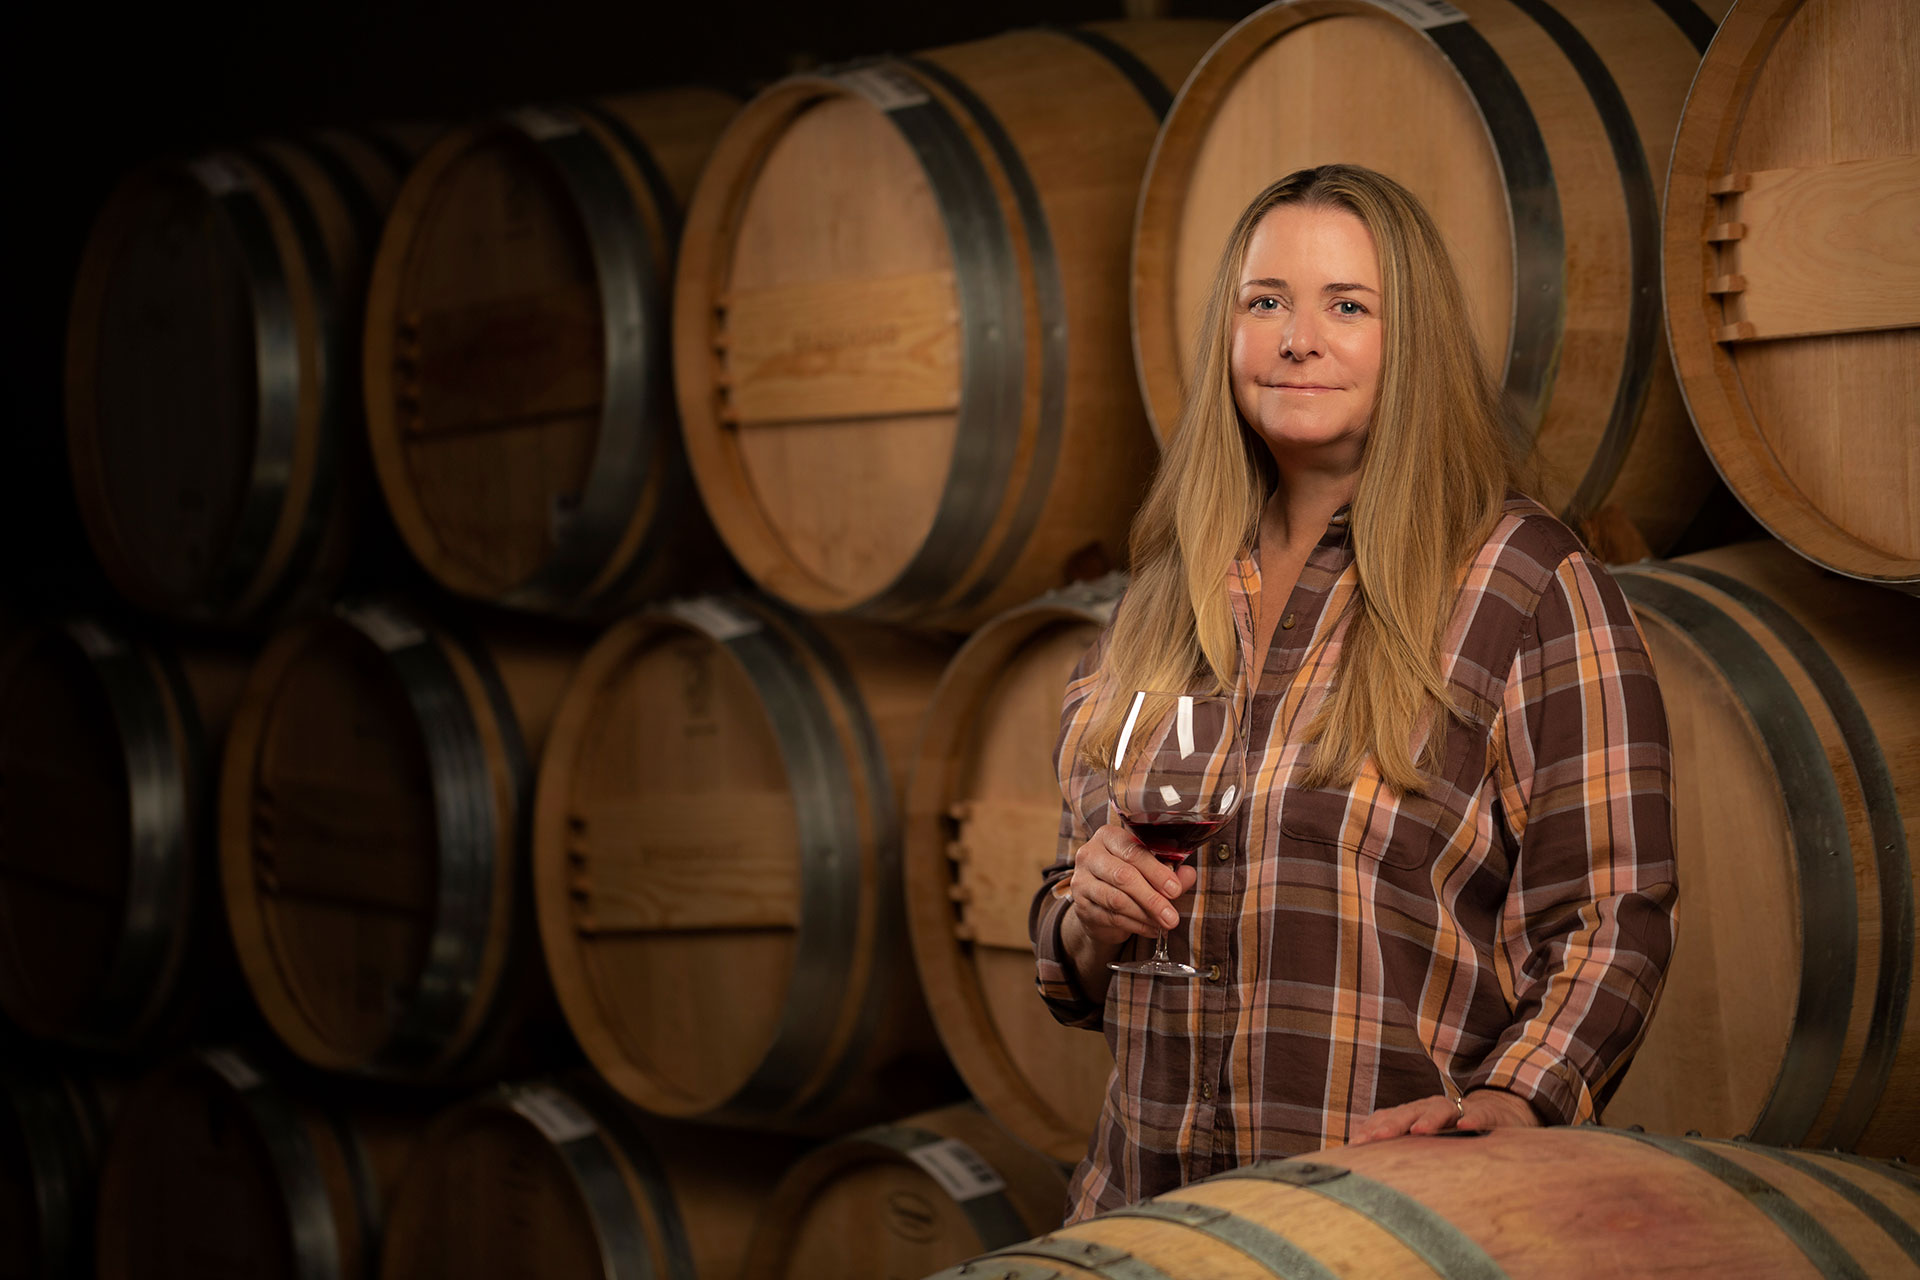 Kathryn Kaigas Winemaker Barrel Room Portrait by Frank Gutierrez